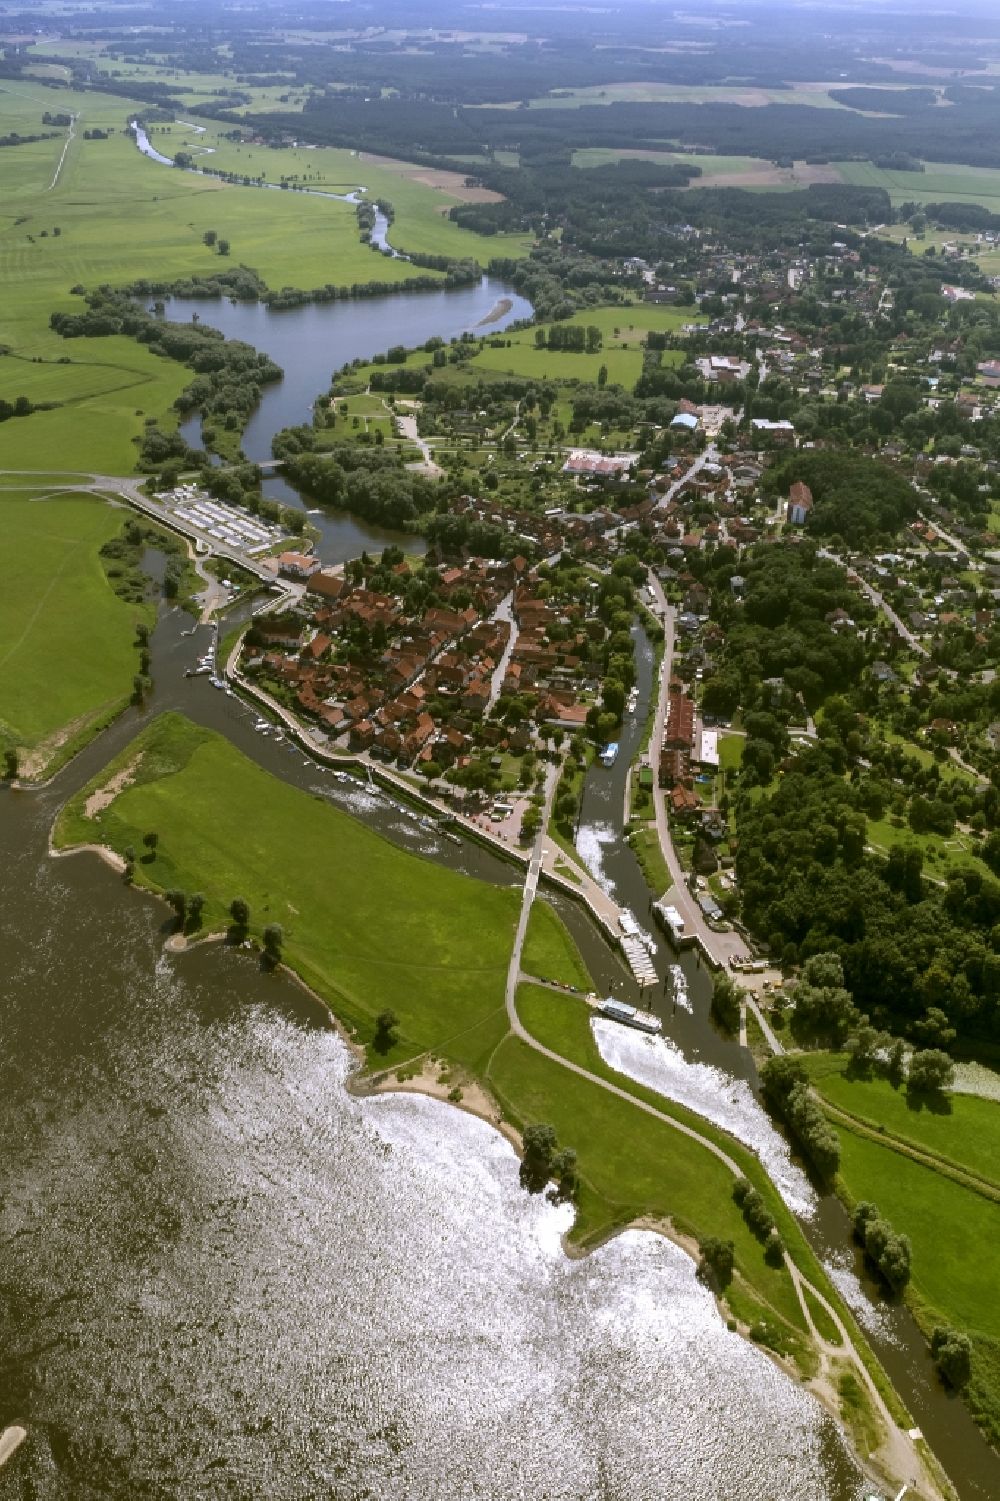 Aerial photograph Hitzacker - City view of Hitzacker in Lower Saxony